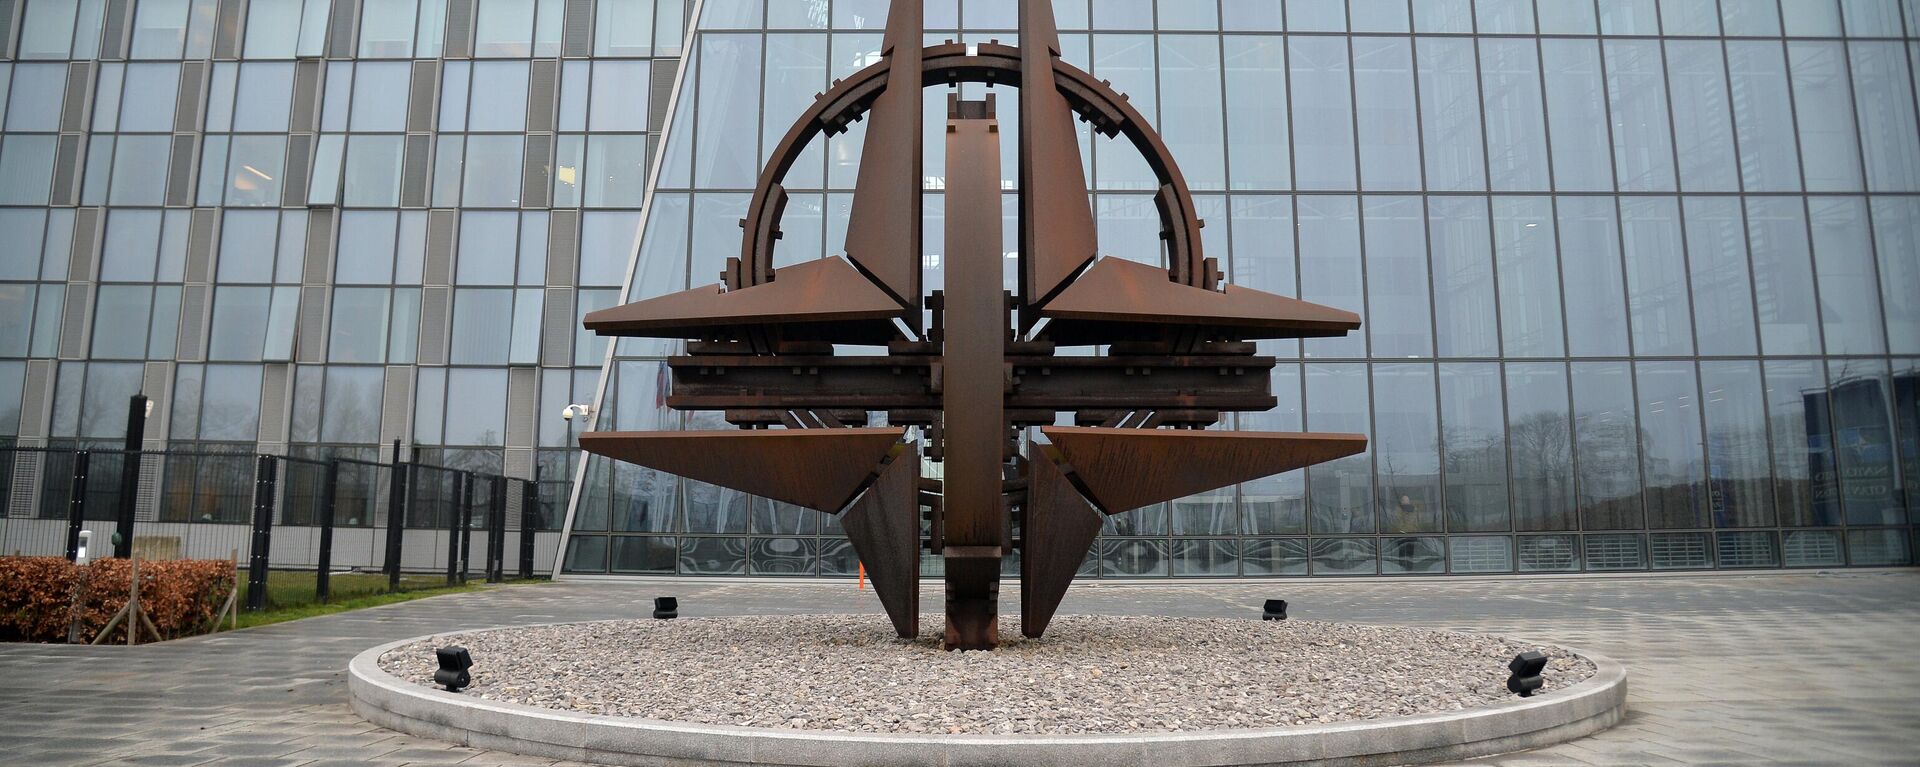 НАТОнун Брюсселдеги башкы штабы. Архивдик сүрөт - Sputnik Кыргызстан, 1920, 14.05.2022